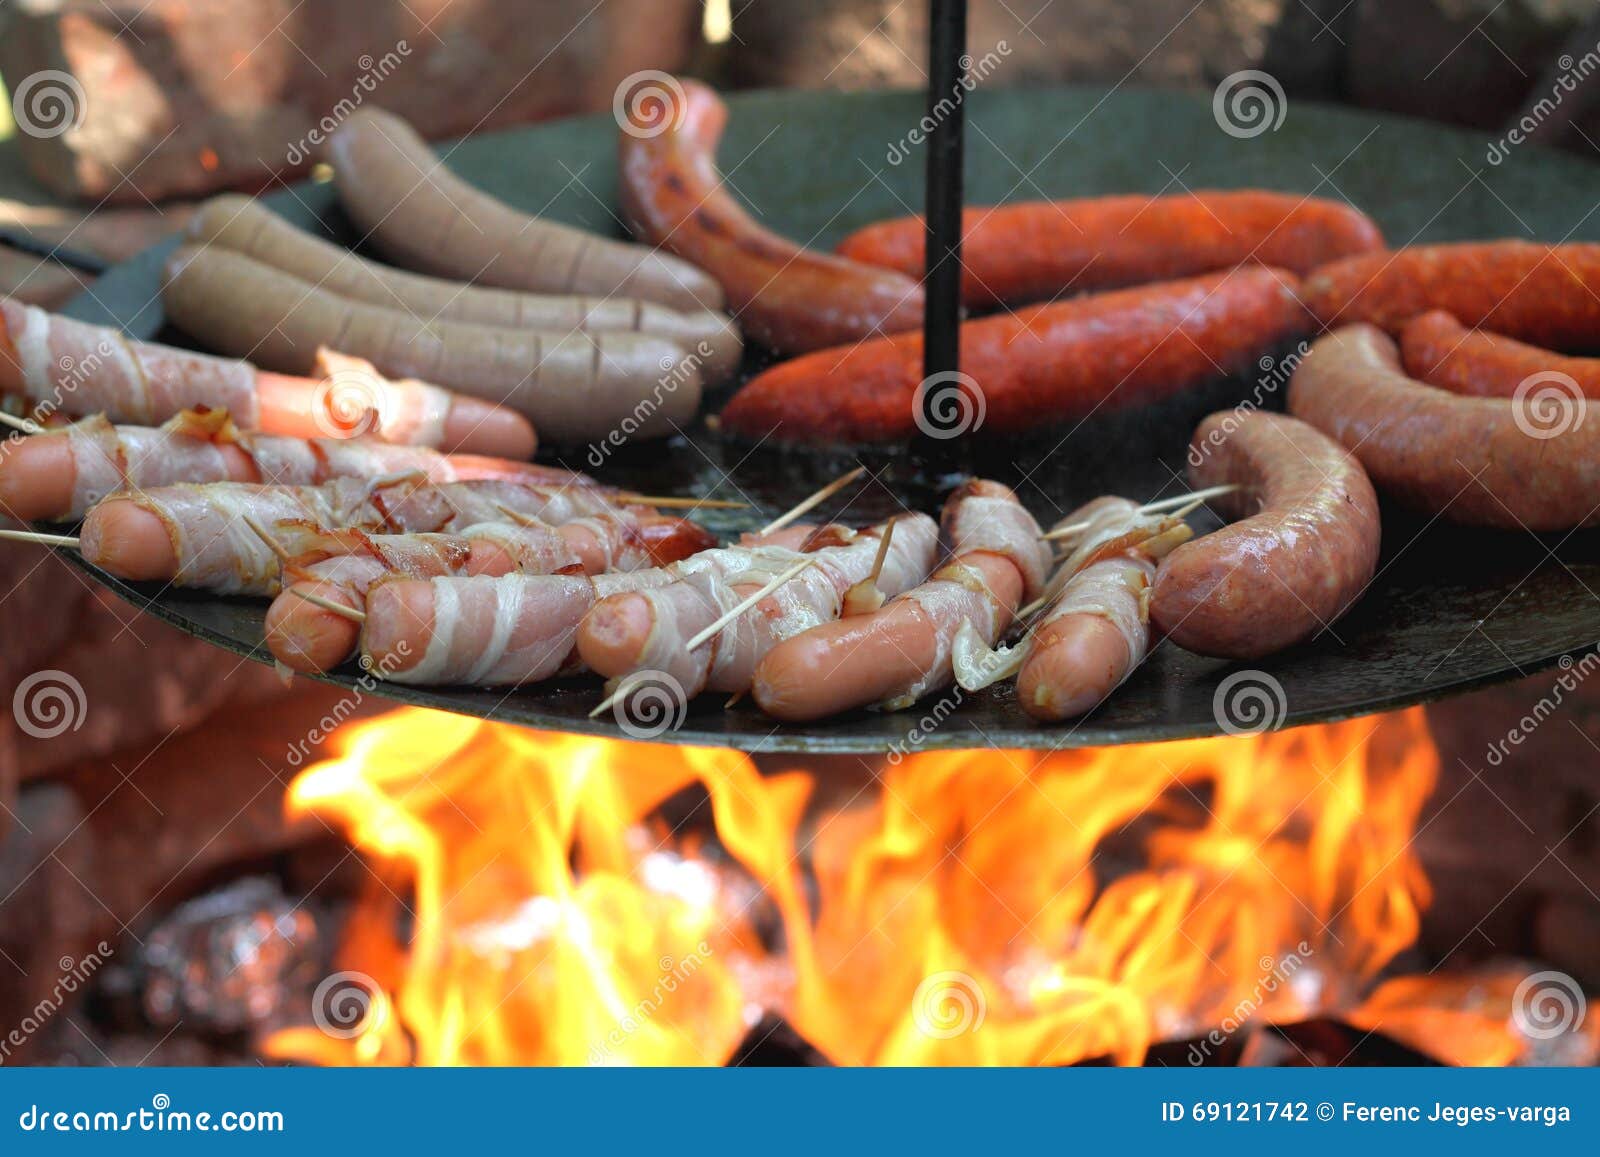 baking sausages